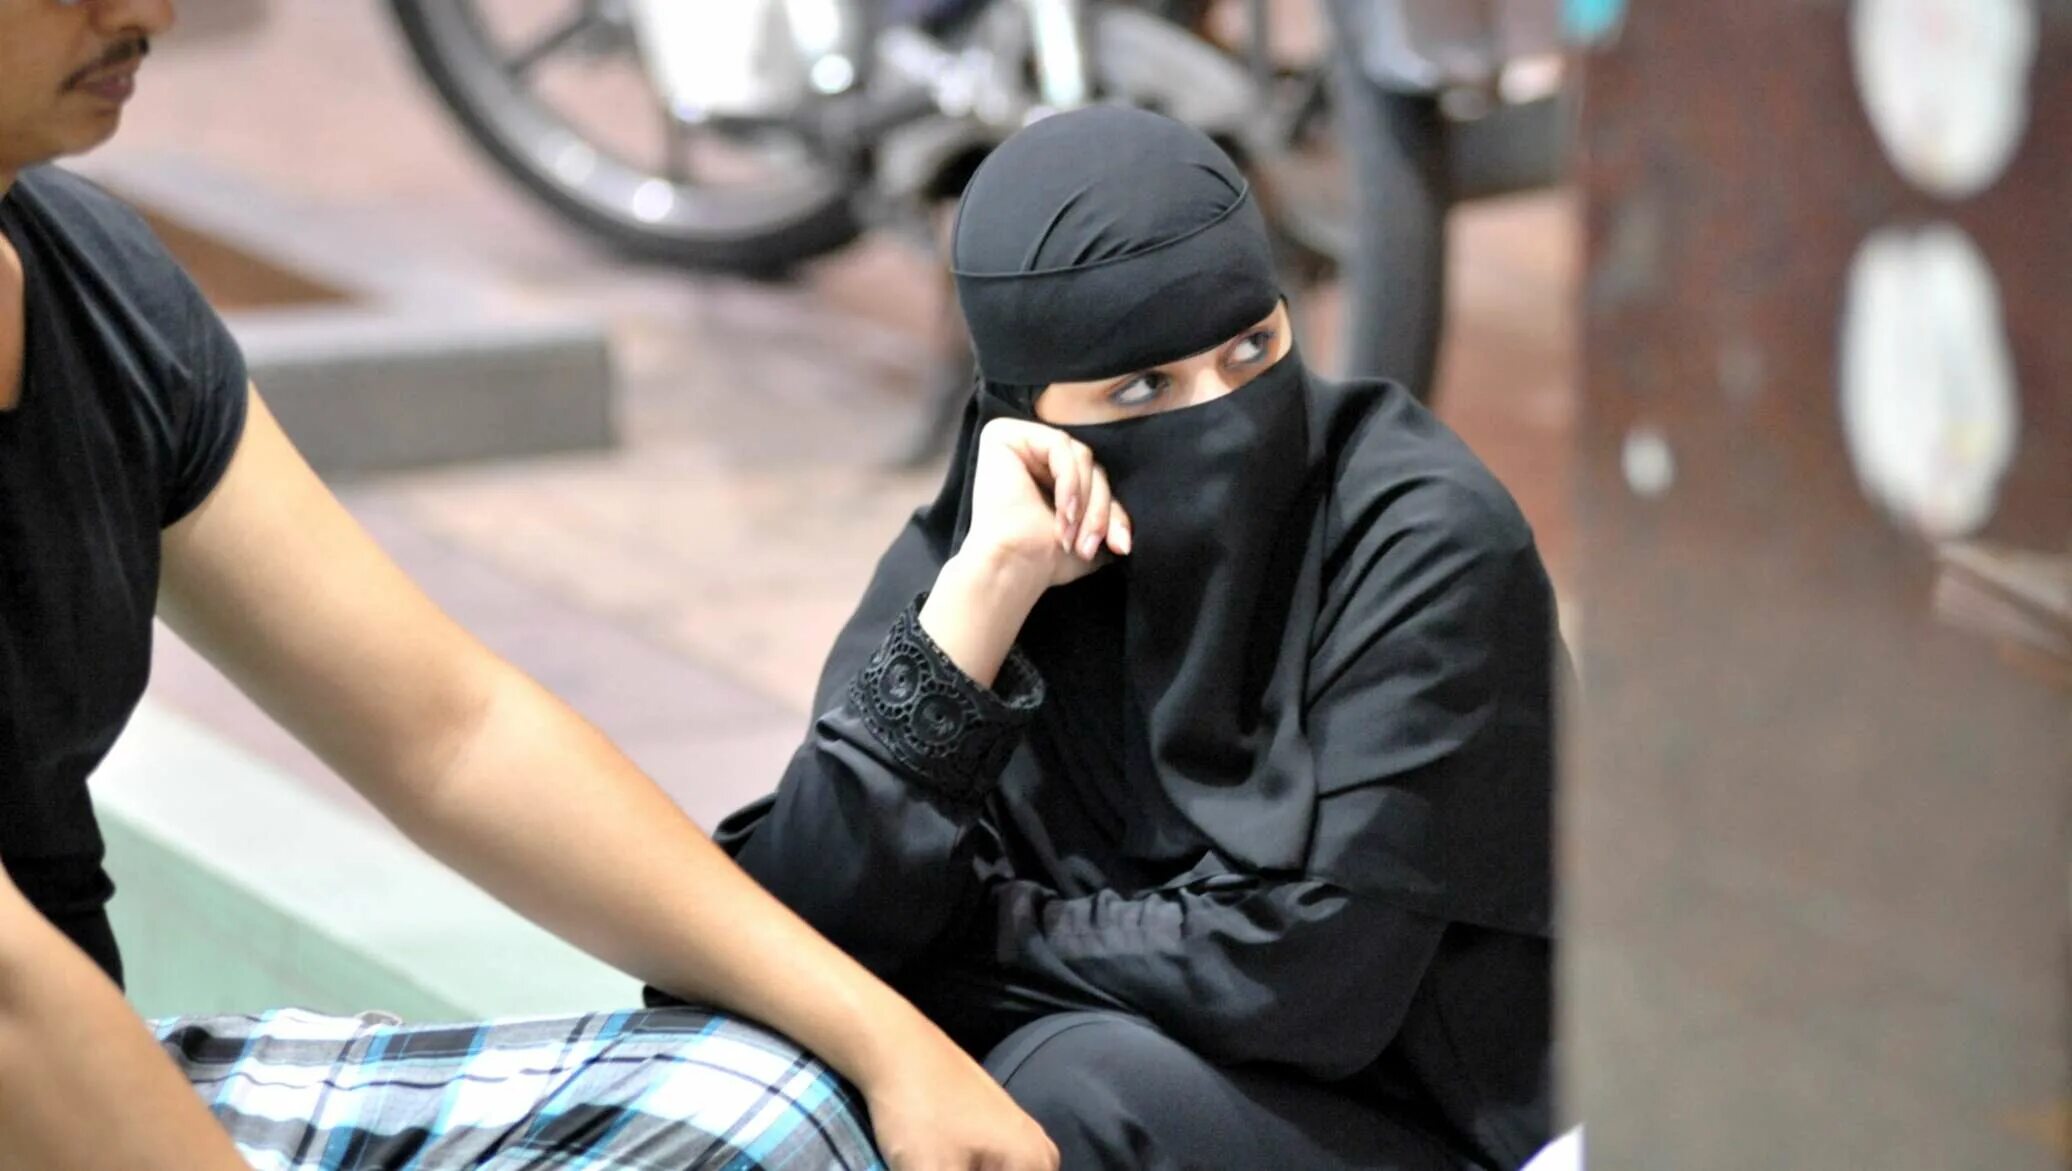 Мусульманки в общественном месте. Одежда женщин полицейских мусульманок. Запрет хиджаба во Франции. Фото девушек в парандже в метро.